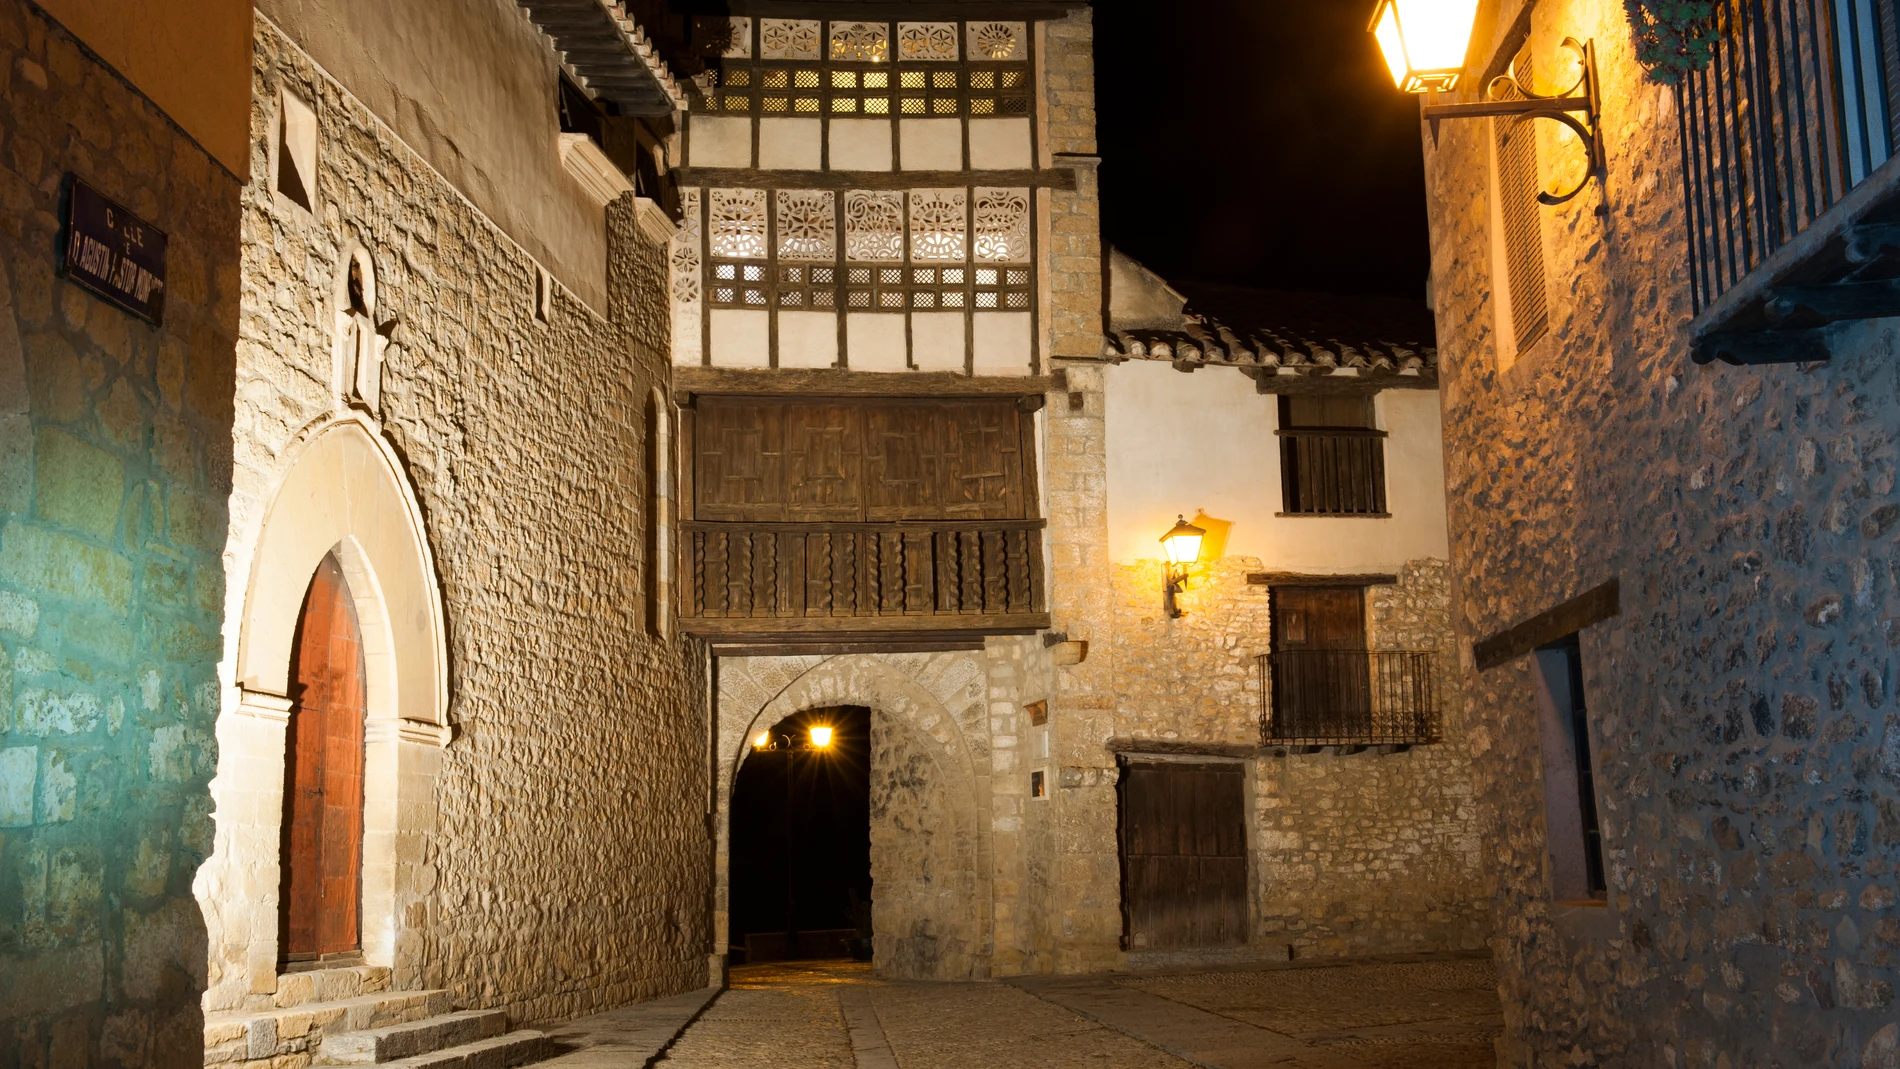 Imagen de Mirambel, municipio de Teruel declarado uno de los pueblos más bonitos de España